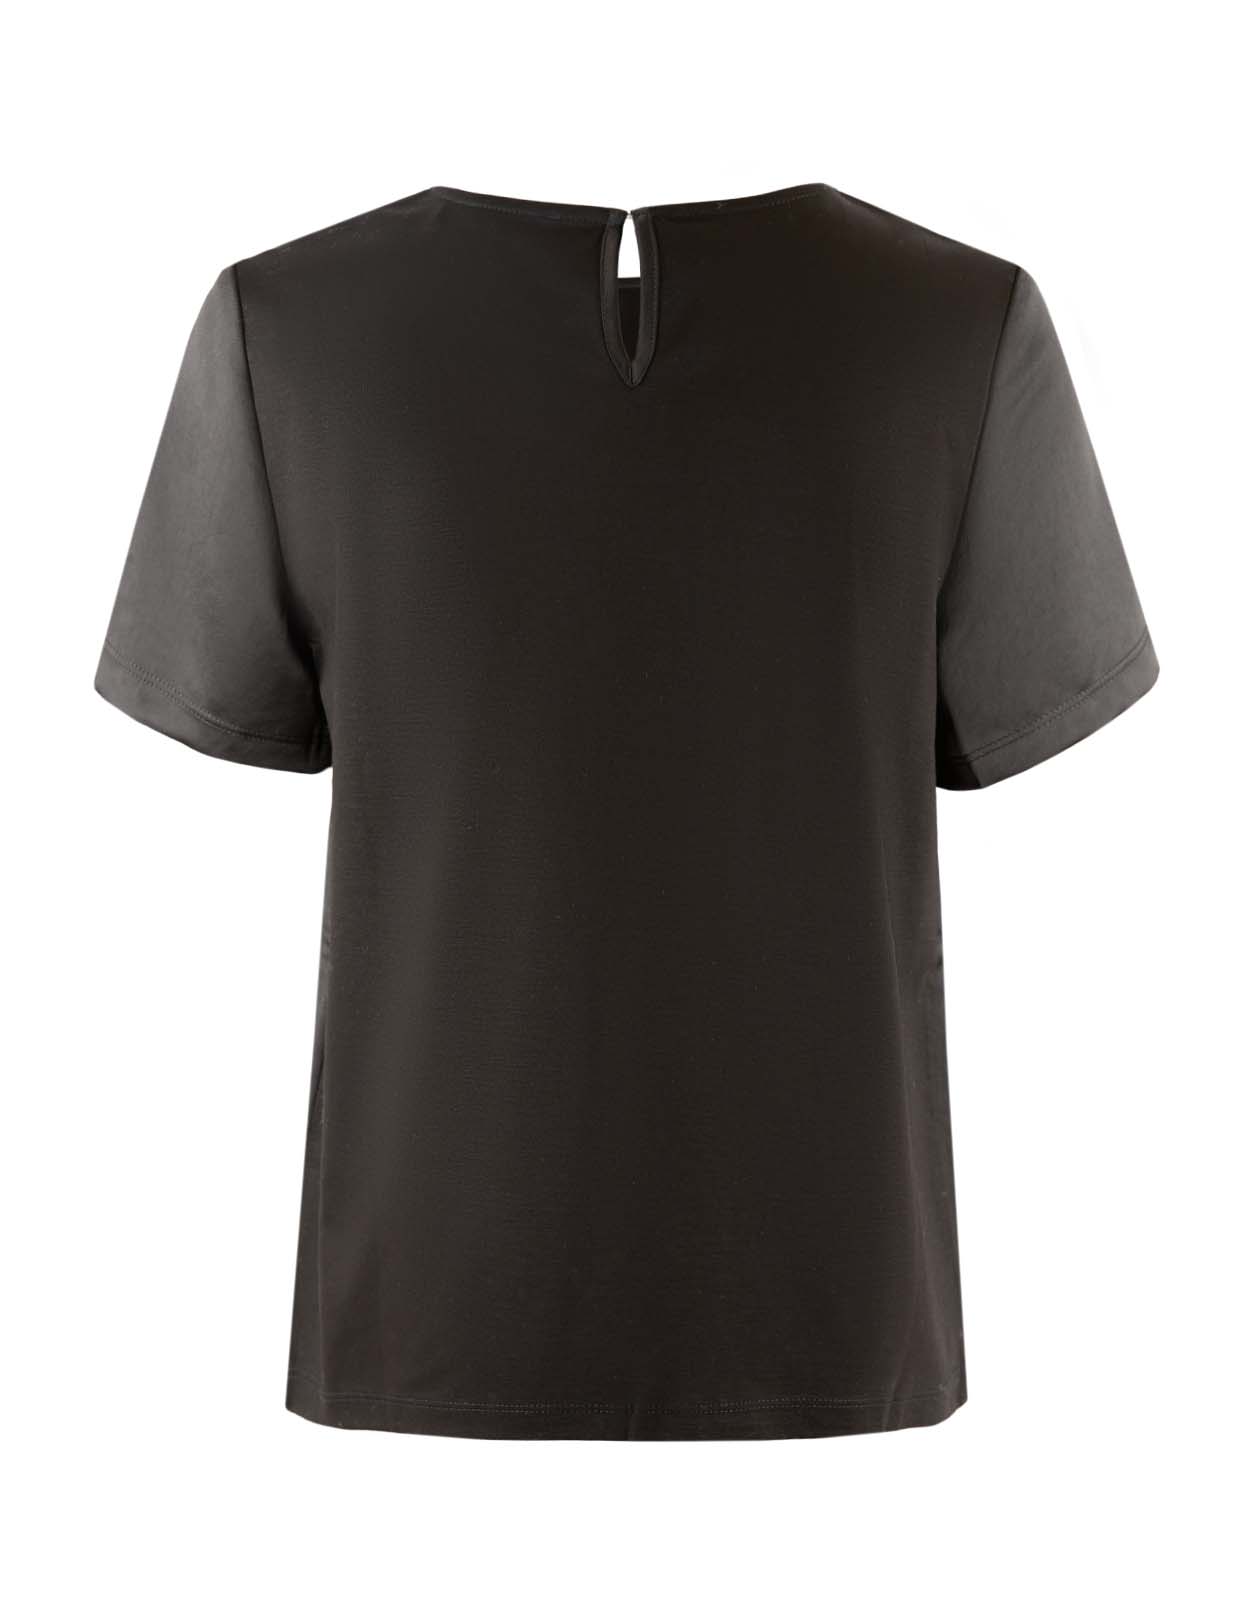 Gilbert T-Shirt Black